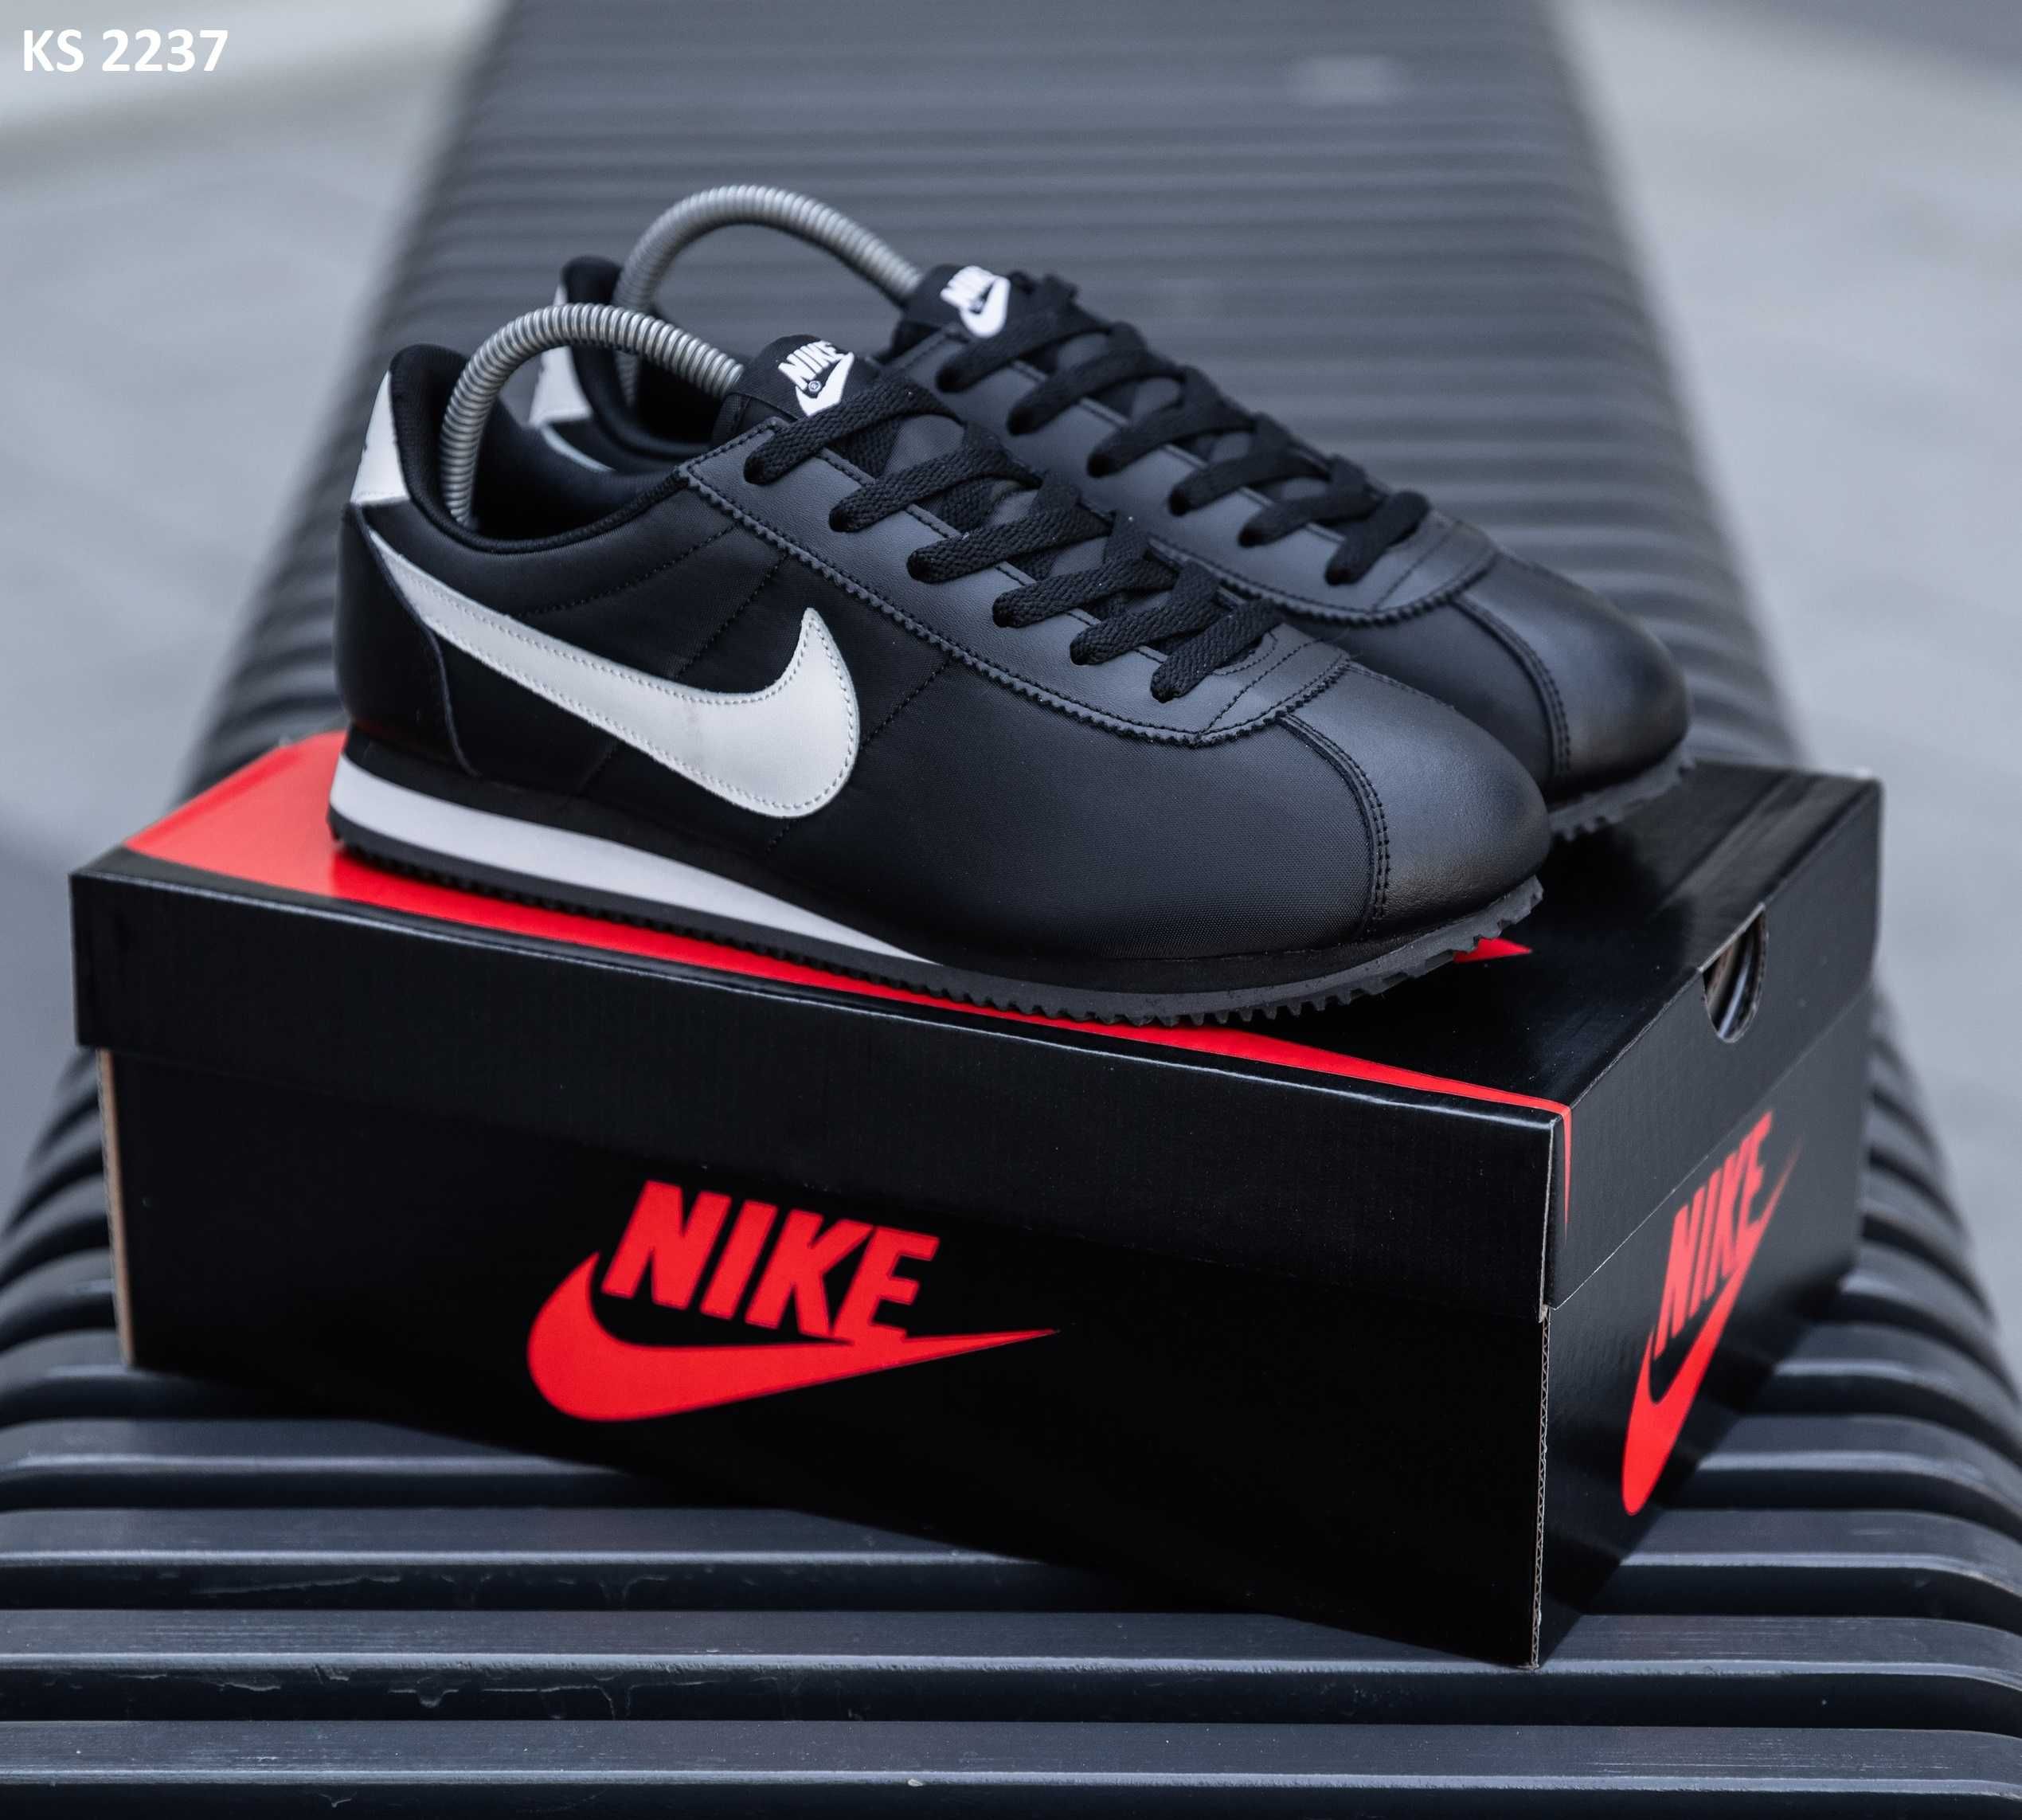 Чоловічі кросівки/взуття Nike Cortez! Артикул: KS 2237